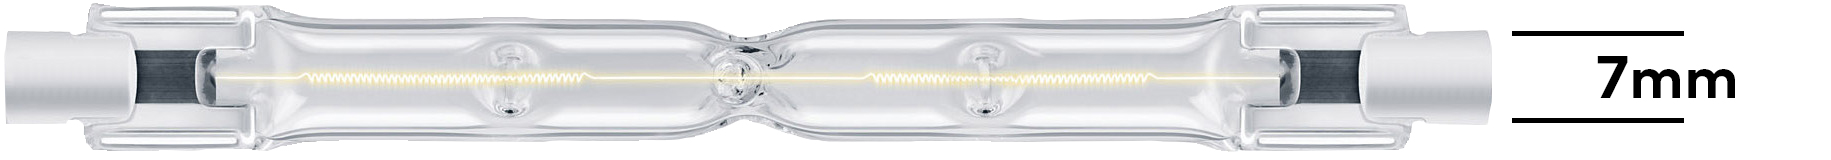 Lampe halogène typique. R7 en référence à la largeur du raccord de 7 mm. 